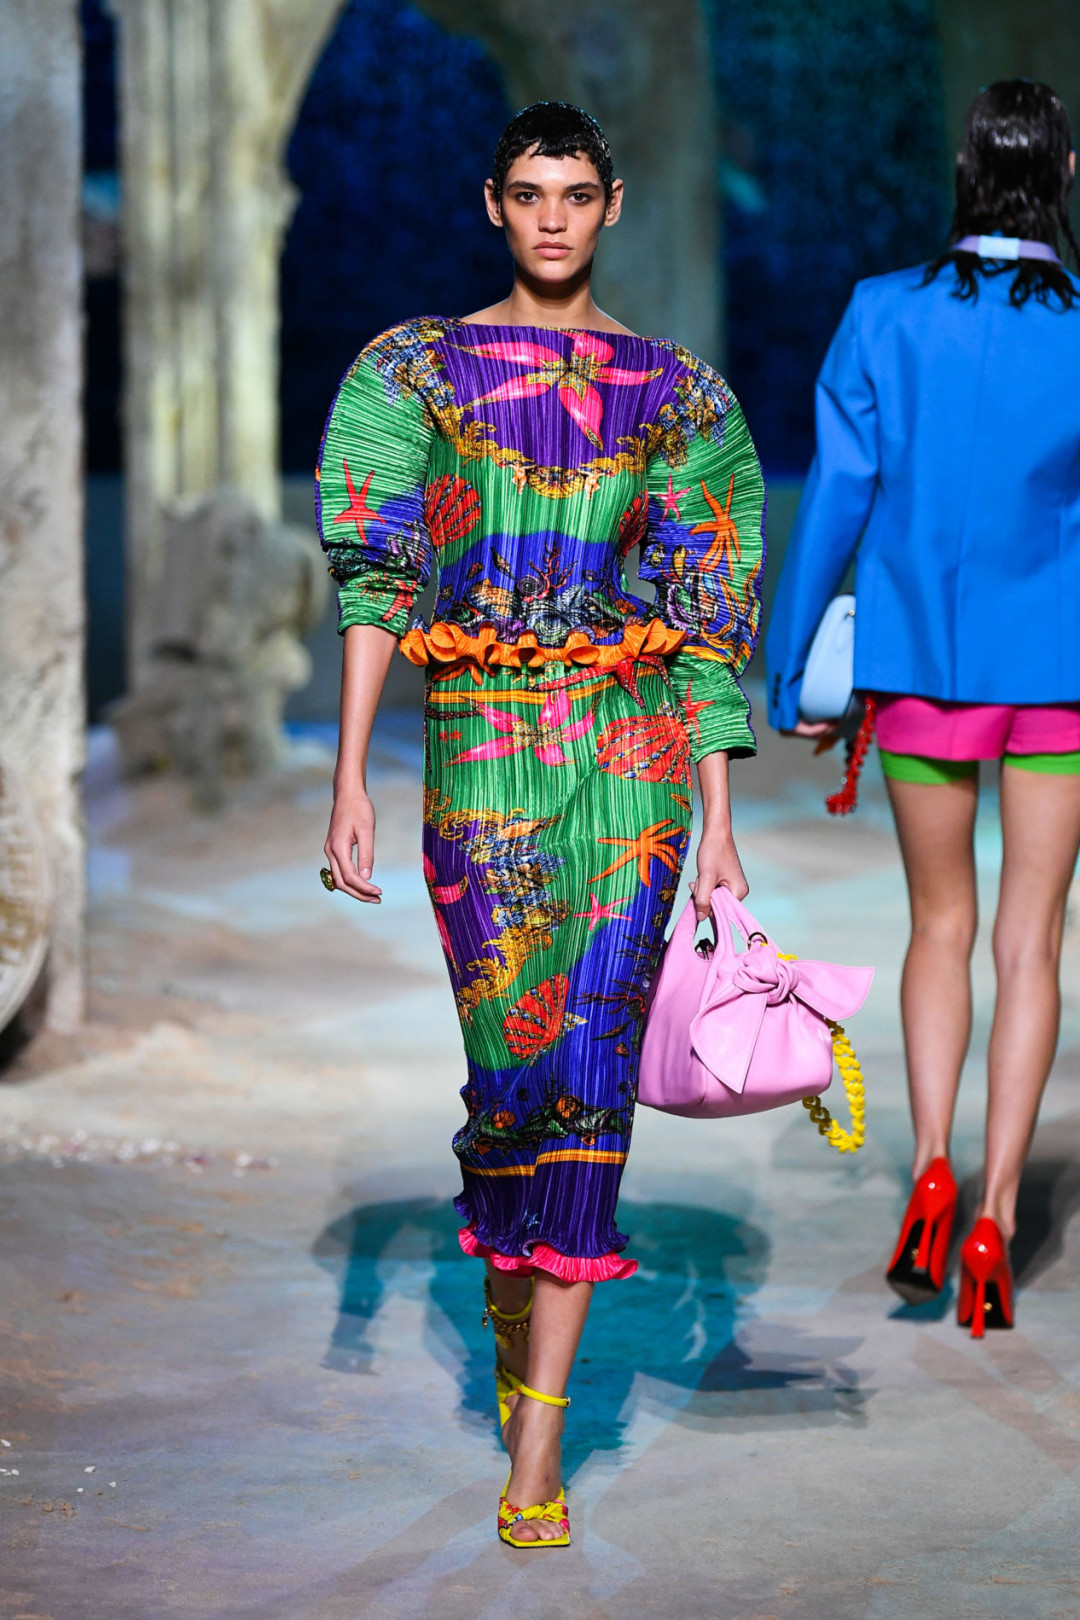 Показ Versace: сексуальные платья, насыщенные цвета и парад топ-моделей во главе с Ратажковски